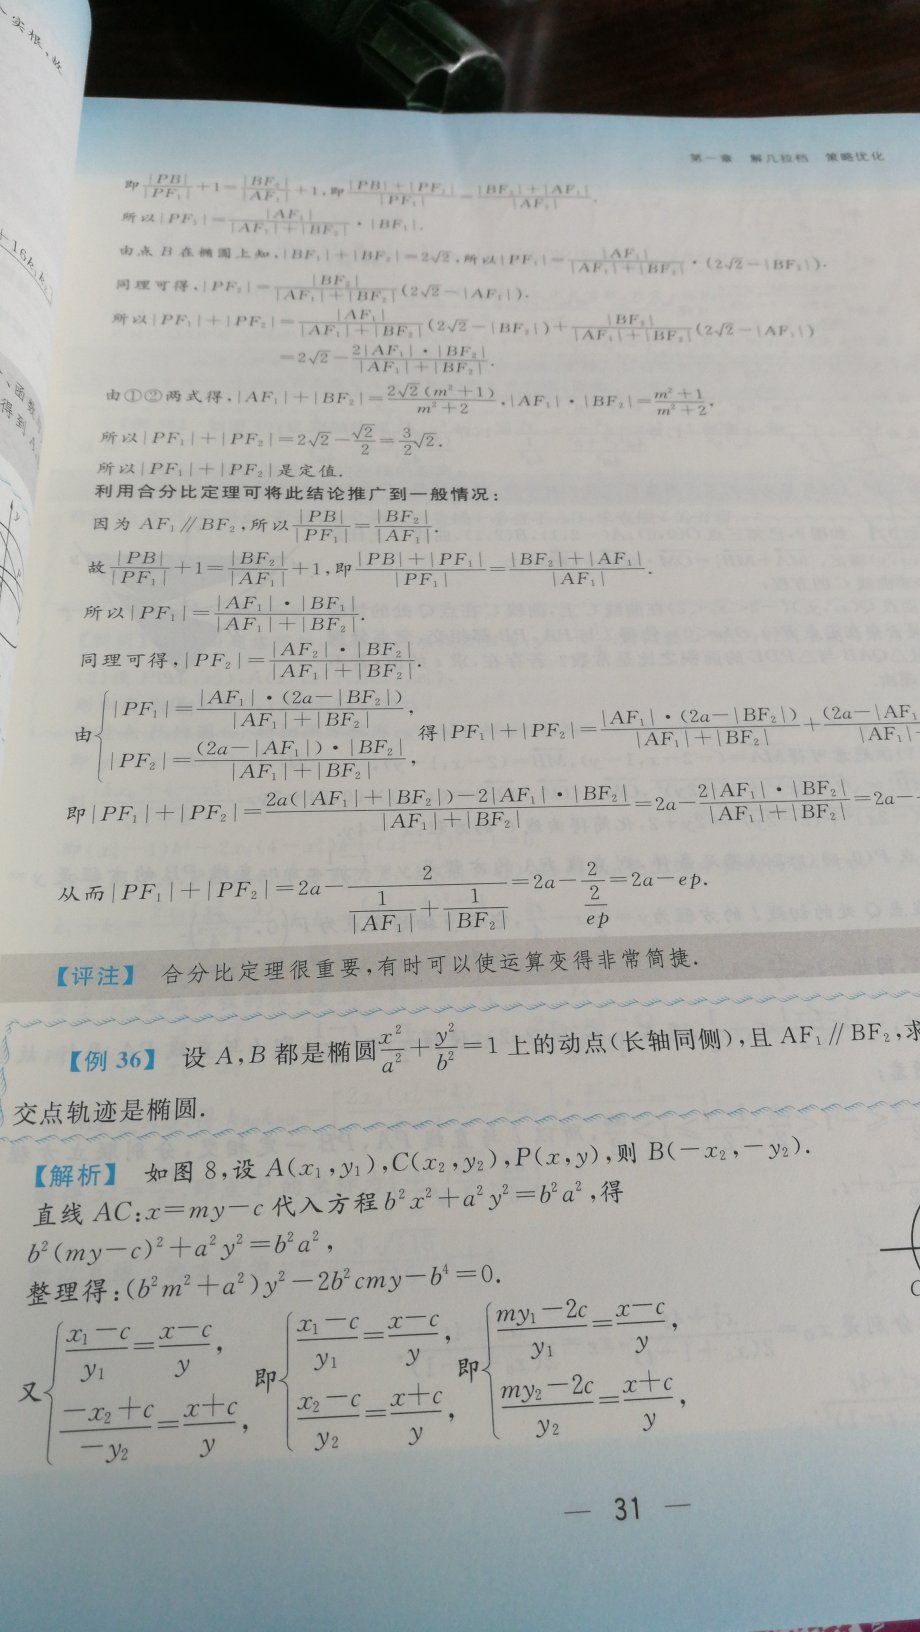 解析几何高考辅导书，个人感觉浙江大学出版的都比较好但题也比较难。